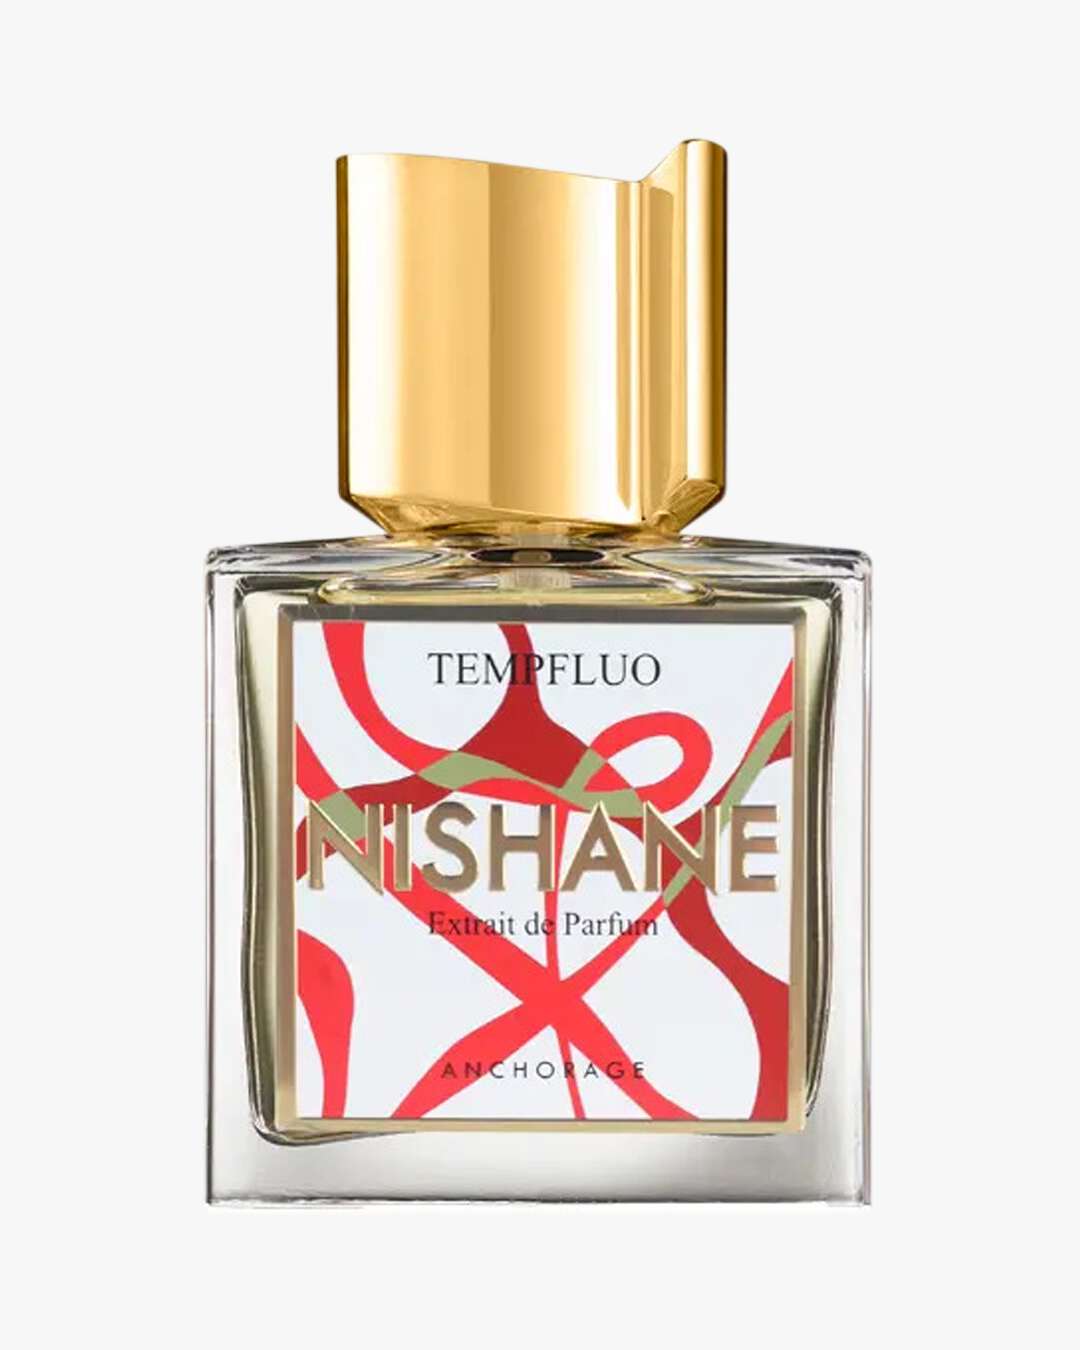 TEMPFLUO Extrait de Parfum 50 ml